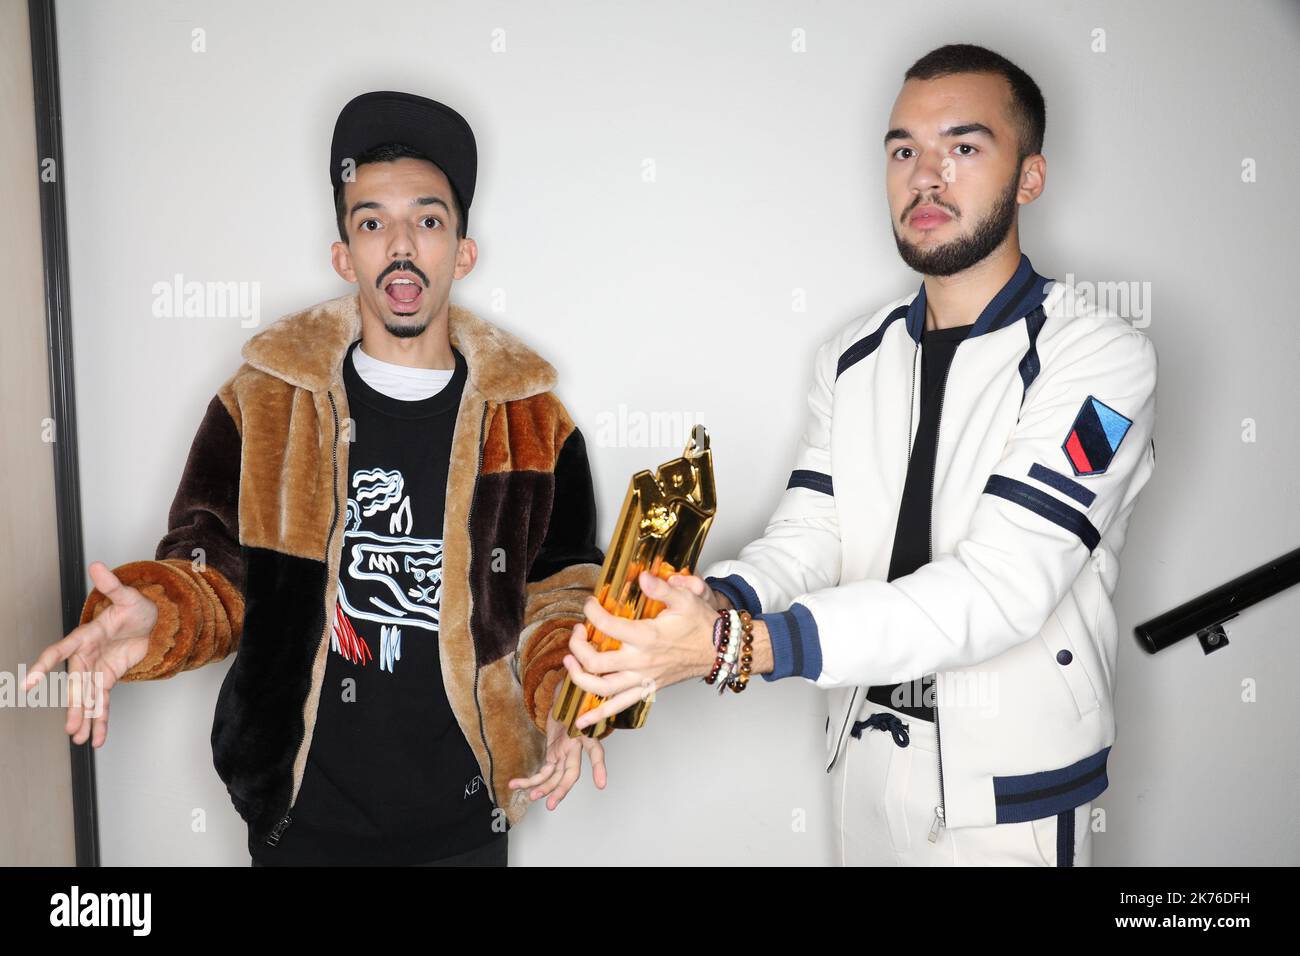 Big Flo et Oli, duo francophone de l’année arrivant pour les NRJ Music Awards 20th au Palais des festivals de Cannes Banque D'Images